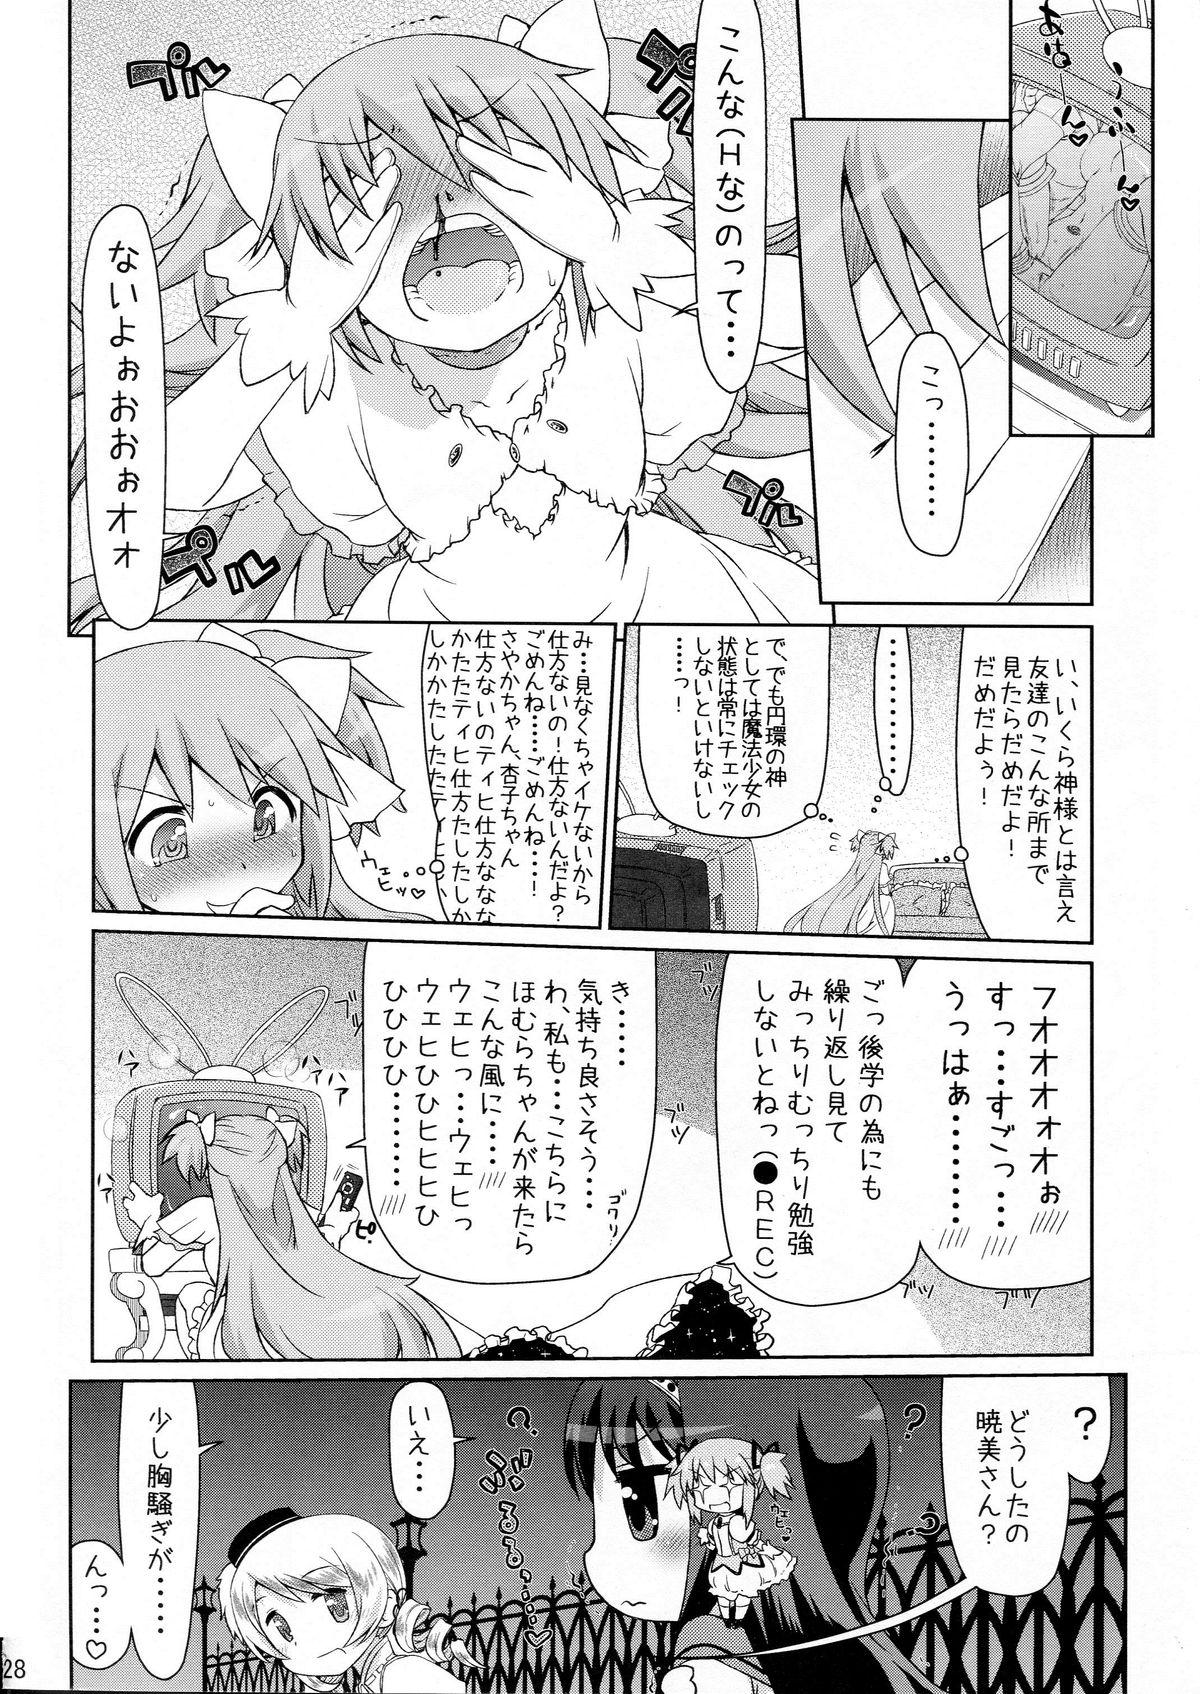 Cuck Gyakushuu no Akai Hito - Puella magi madoka magica Collar - Page 28